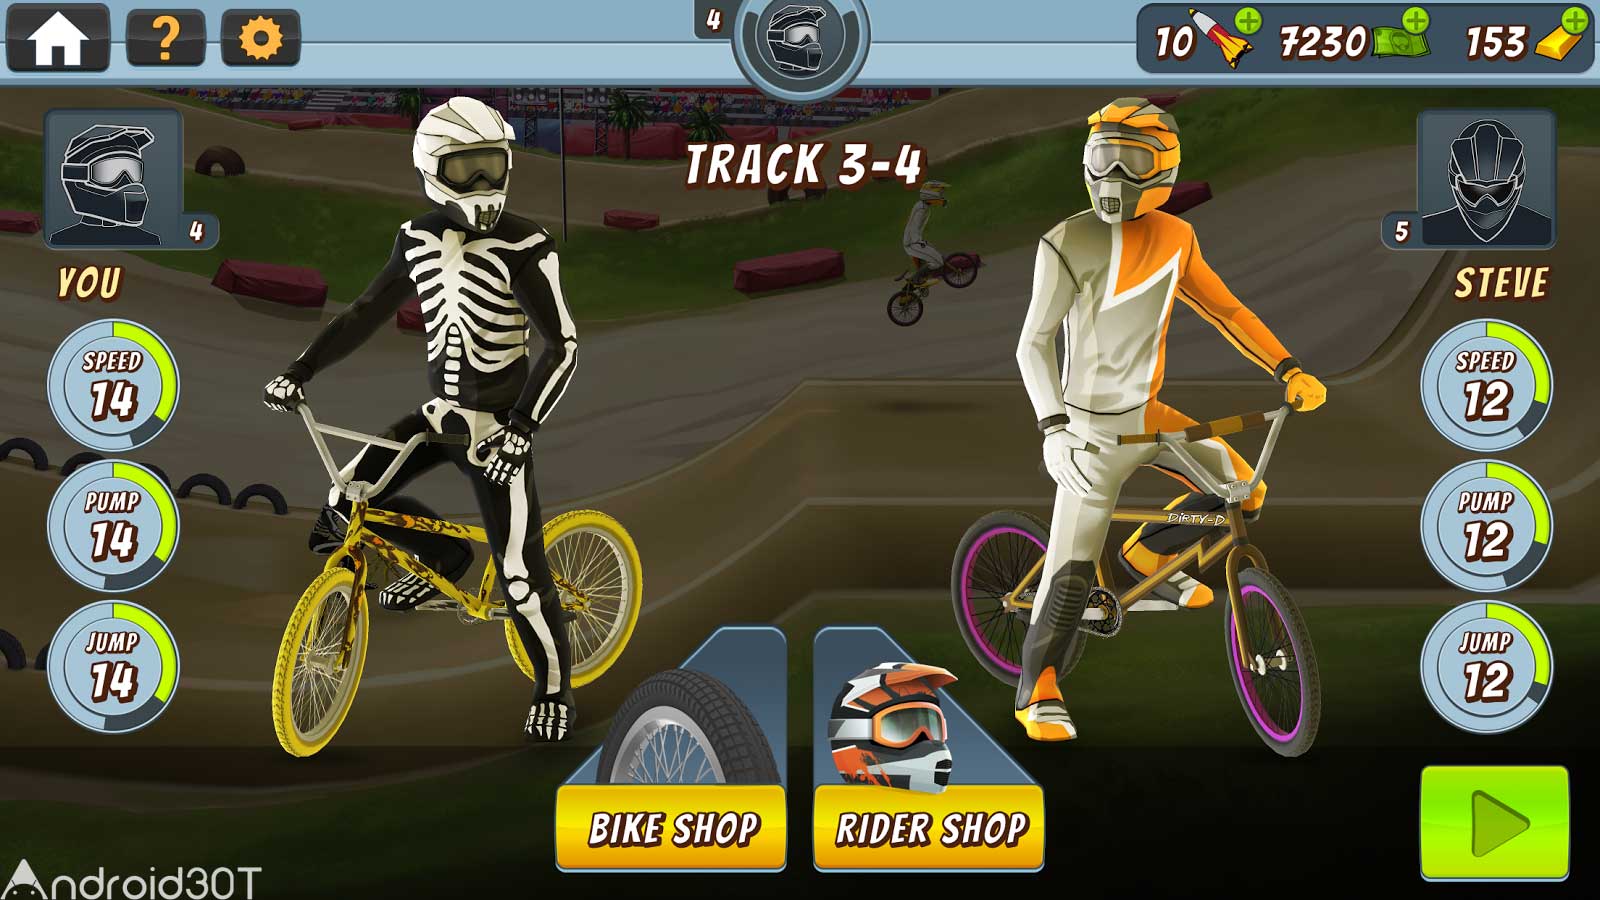 دانلود Mad Skills BMX 2 2.5.2 – بازی دوچرخه سواری بی ام ایکس 2 اندروید